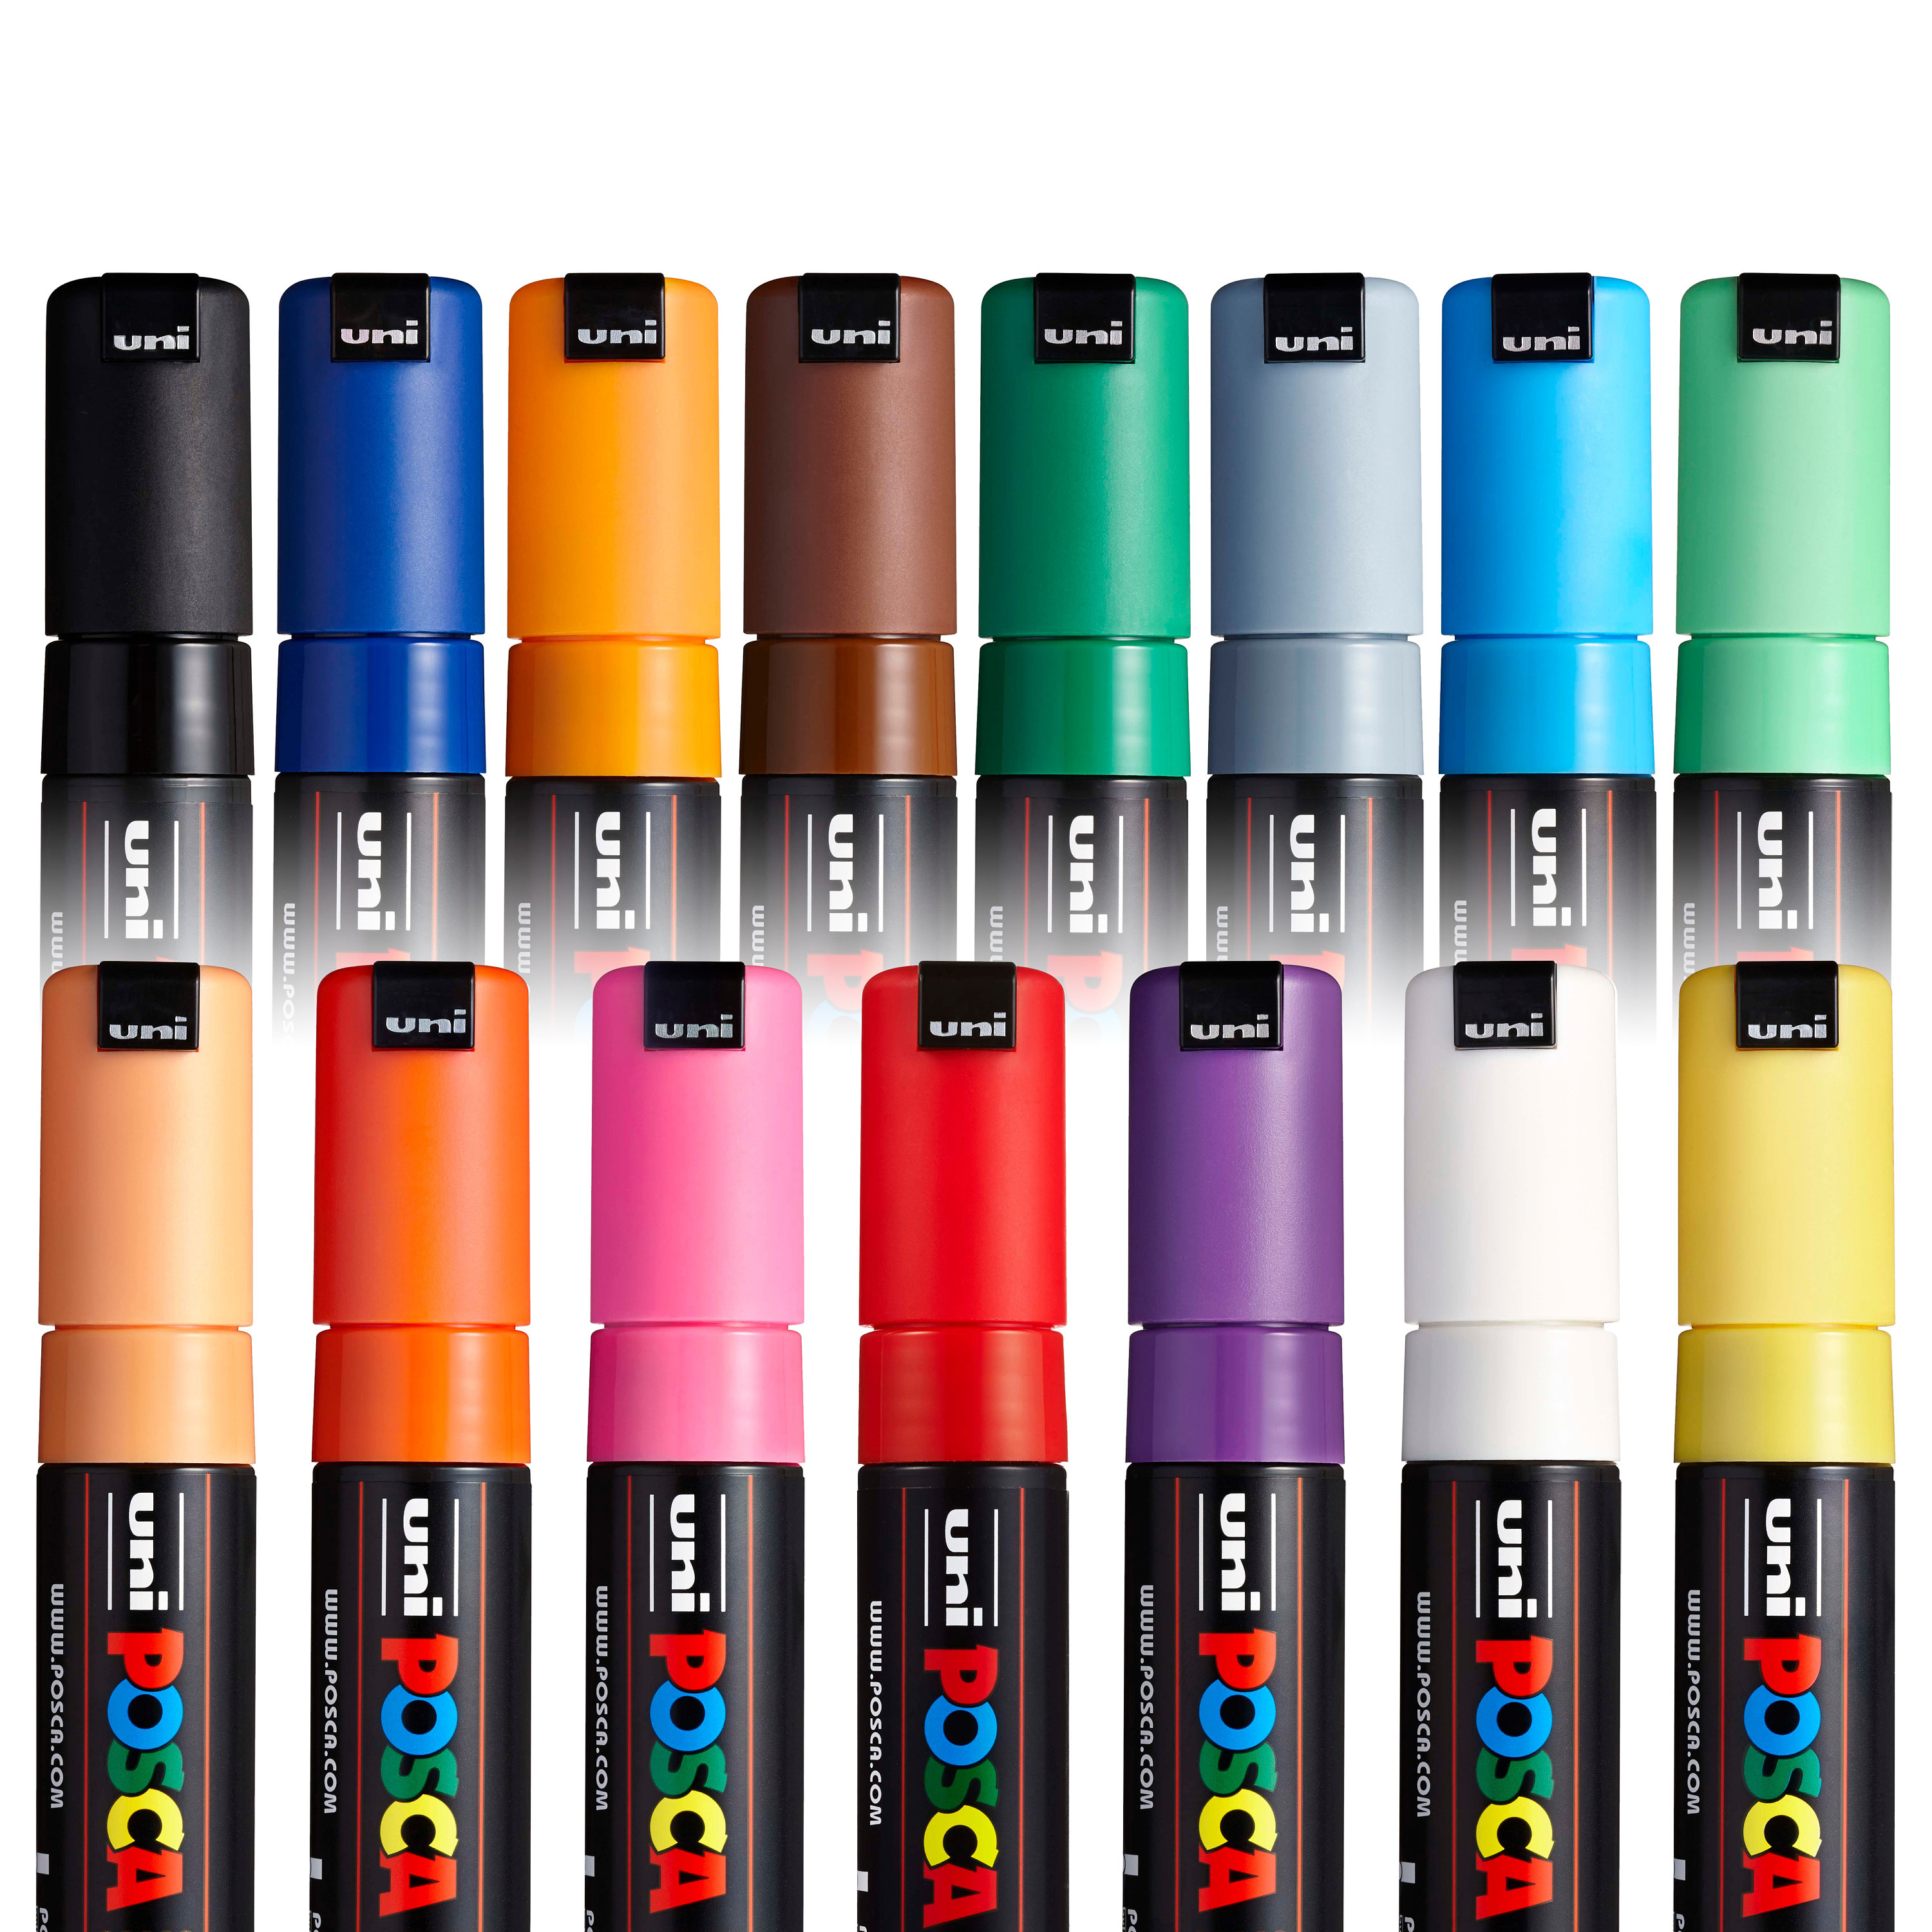 Posca Marker : Pc-7m : Bullet Tip : 4.5 - 5.5mm : Starter Set Of 8 Assorted  Colors